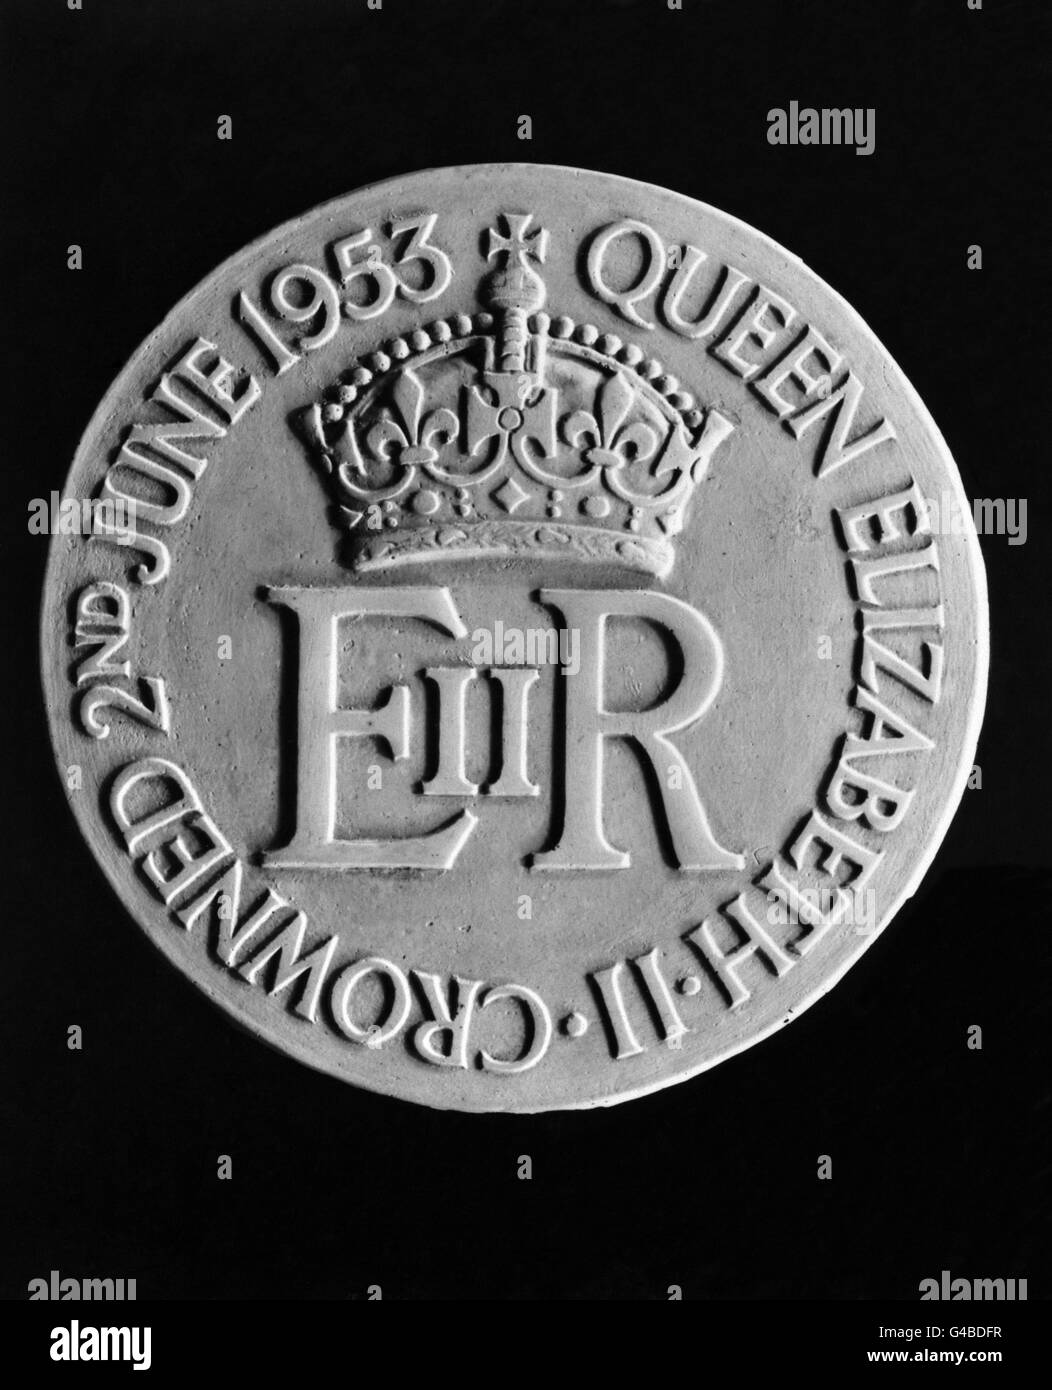 El reverso de la Medalla de Coronación, el recuerdo personal de la Reina a la gente en los Servicios de la Corona y otros en la Mancomunidad y el Imperio. Foto de stock